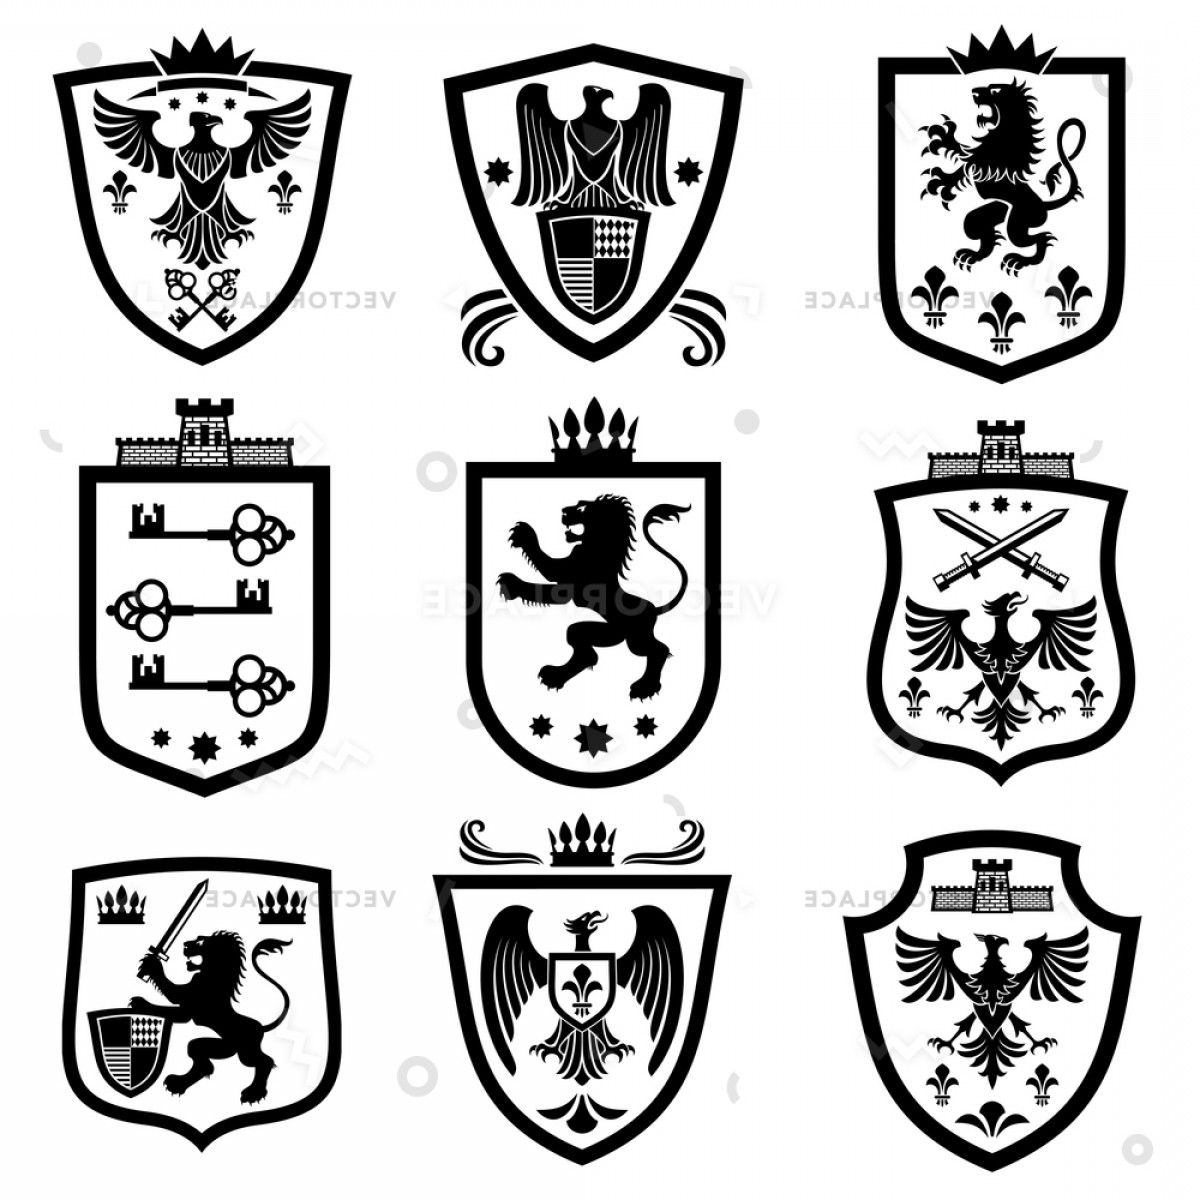 Royal shields nobility.